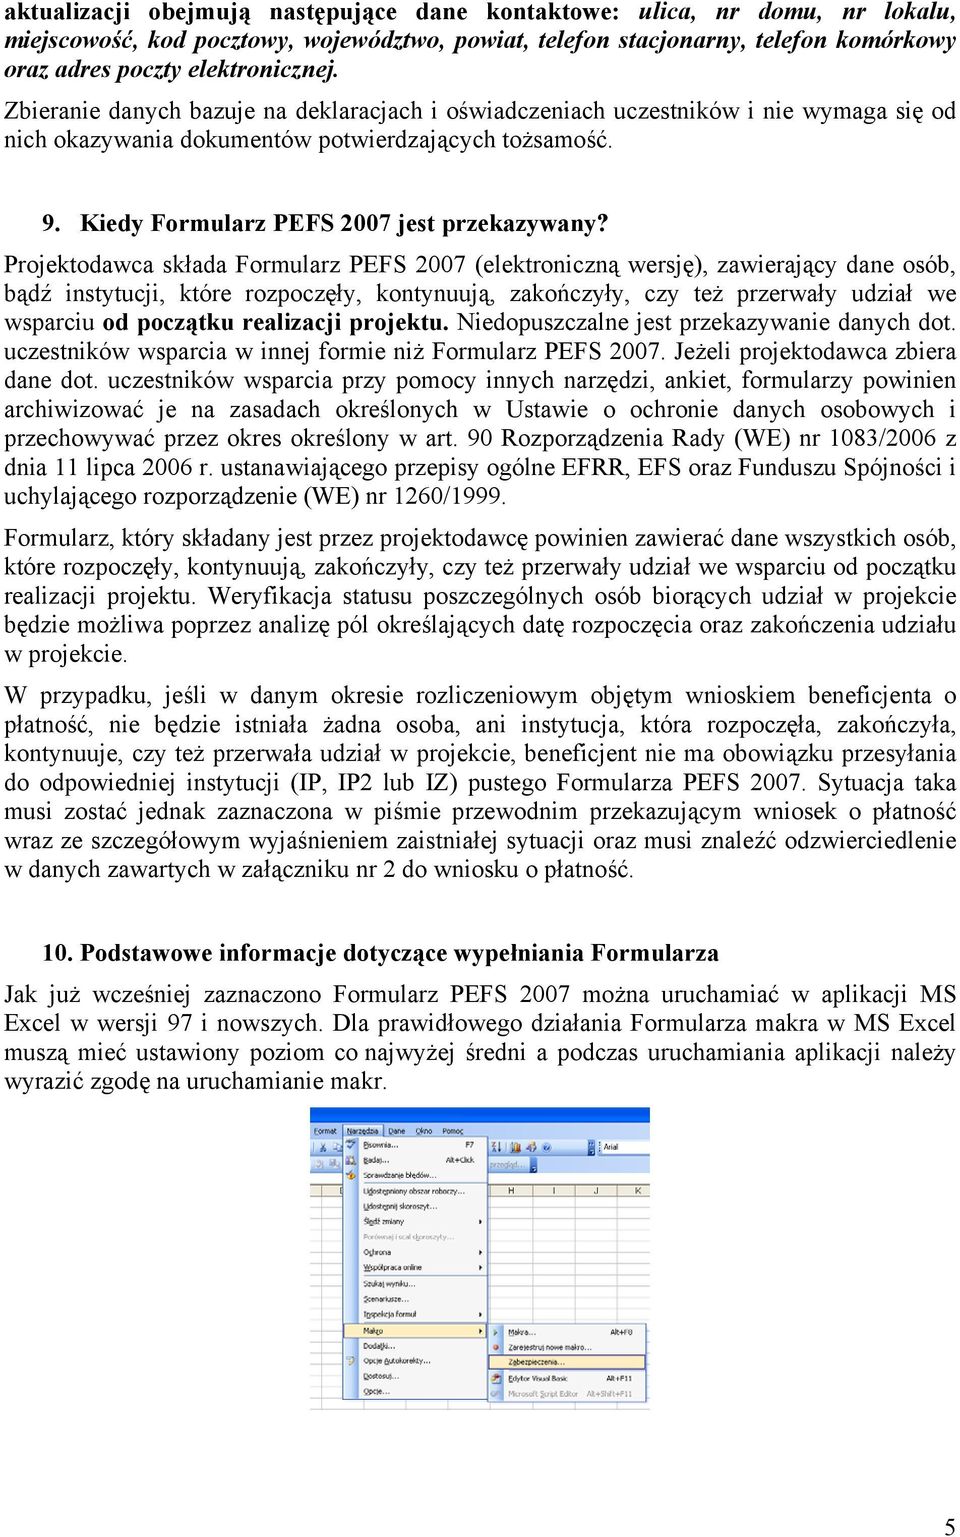 Projektodawca składa Formularz PEFS 2007 (elektroniczną wersję), zawierający dane osób, bądź instytucji, które rozpoczęły, kontynuują, zakończyły, czy też przerwały udział we wsparciu od początku